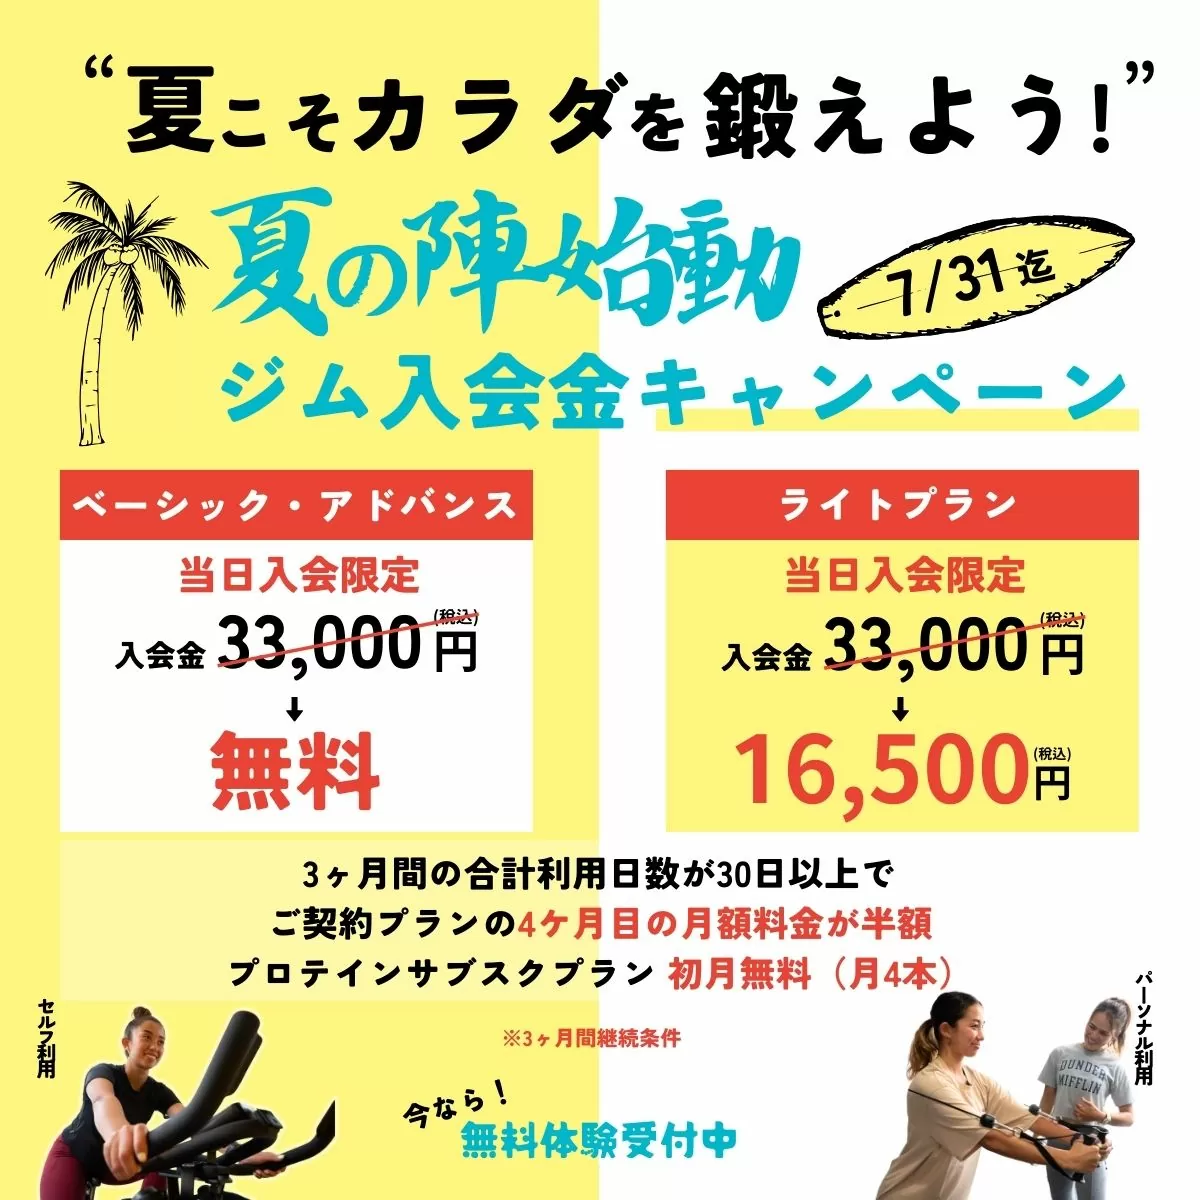 セルフィット茅ヶ崎店のキャンペーン